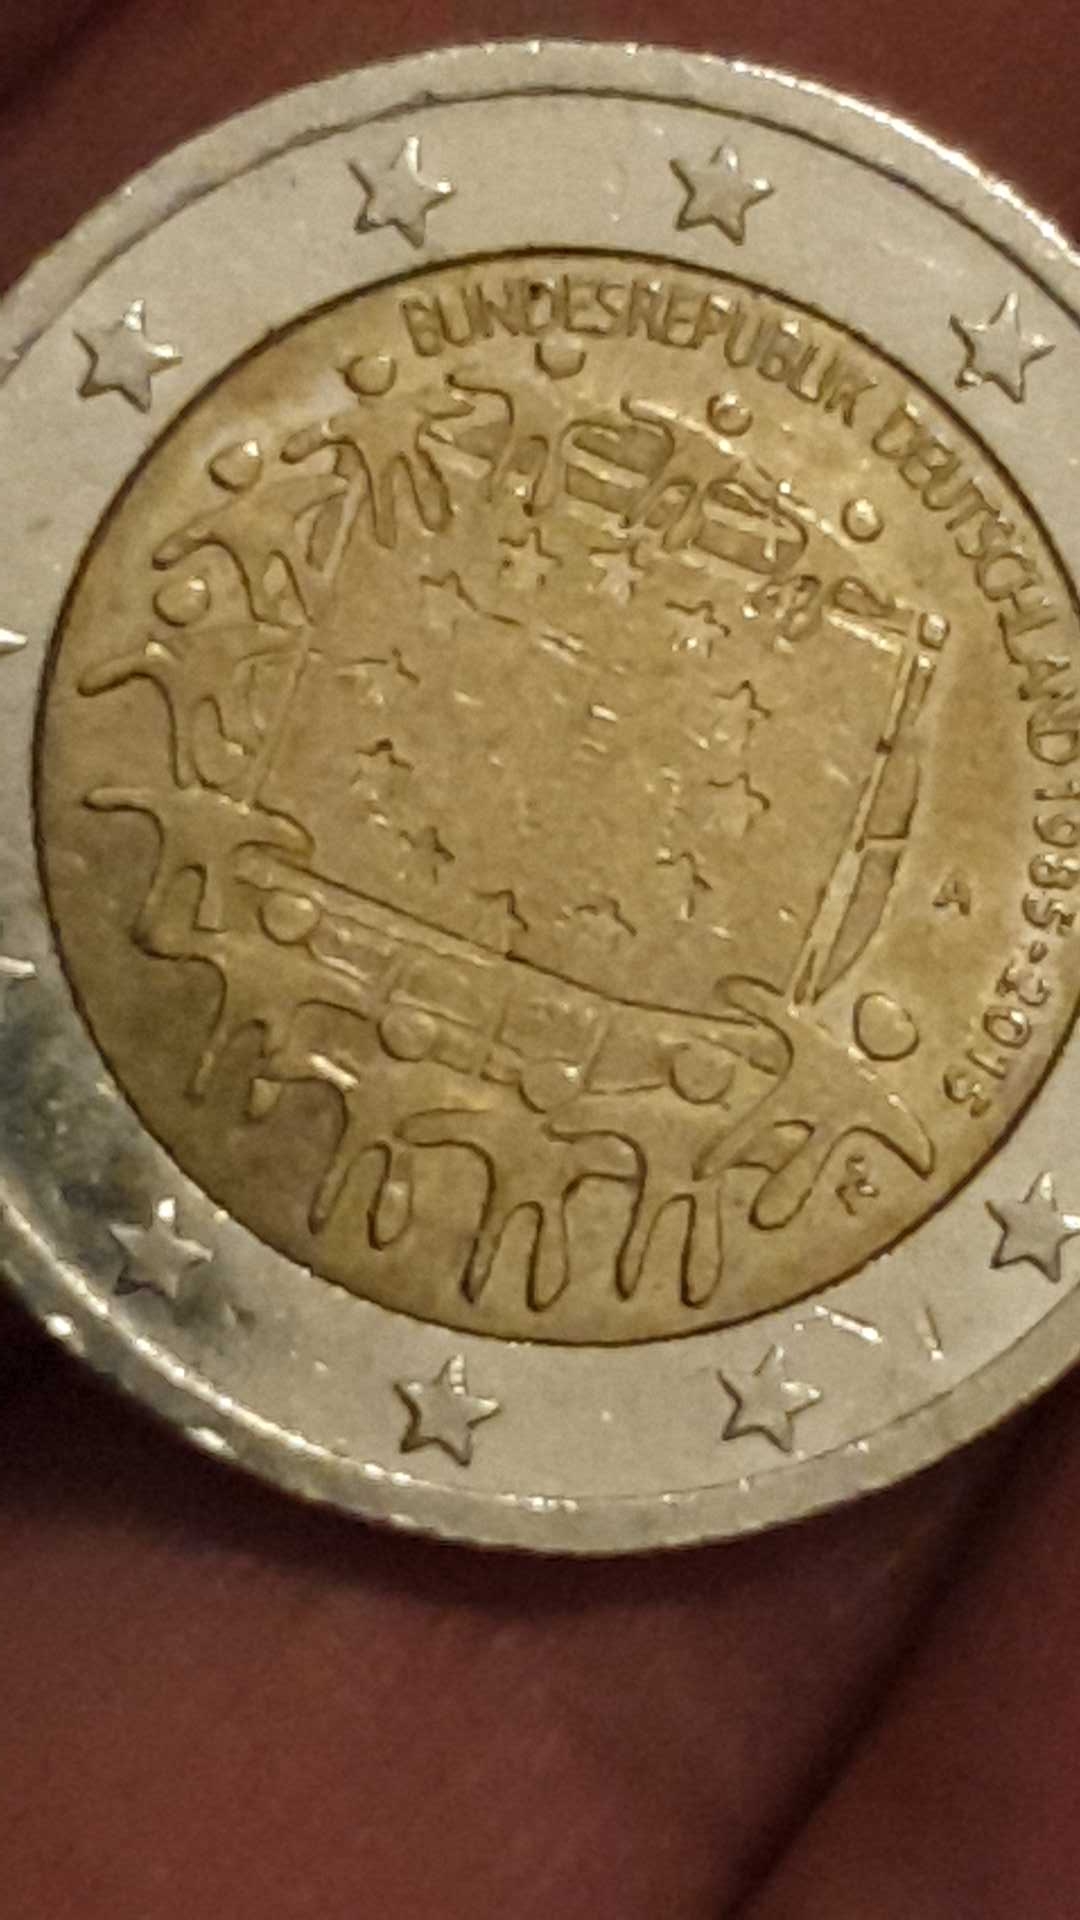 misstrike coin: 2 euro münze fehlprägung??